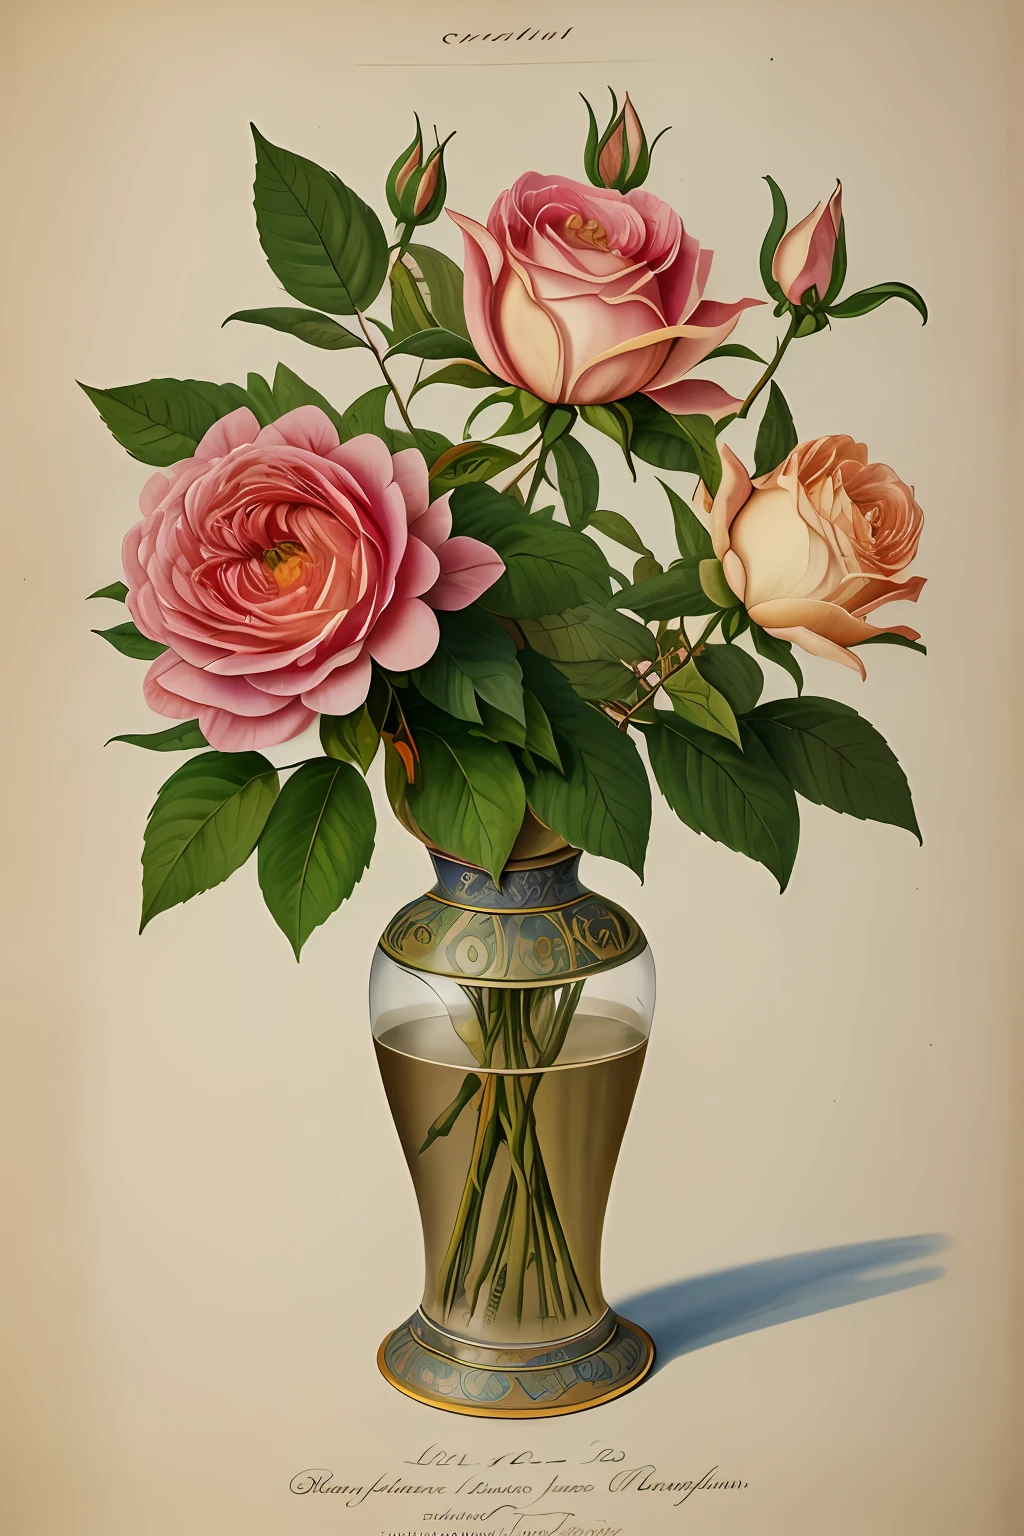 (Meilleure qualité:1.2), (détaillé:1.2), (chef-d&#39;œuvre:1.2), illustrations botaniques vintage de Larger Provence Rose (1770 1775) en haute résolution par John Edwards